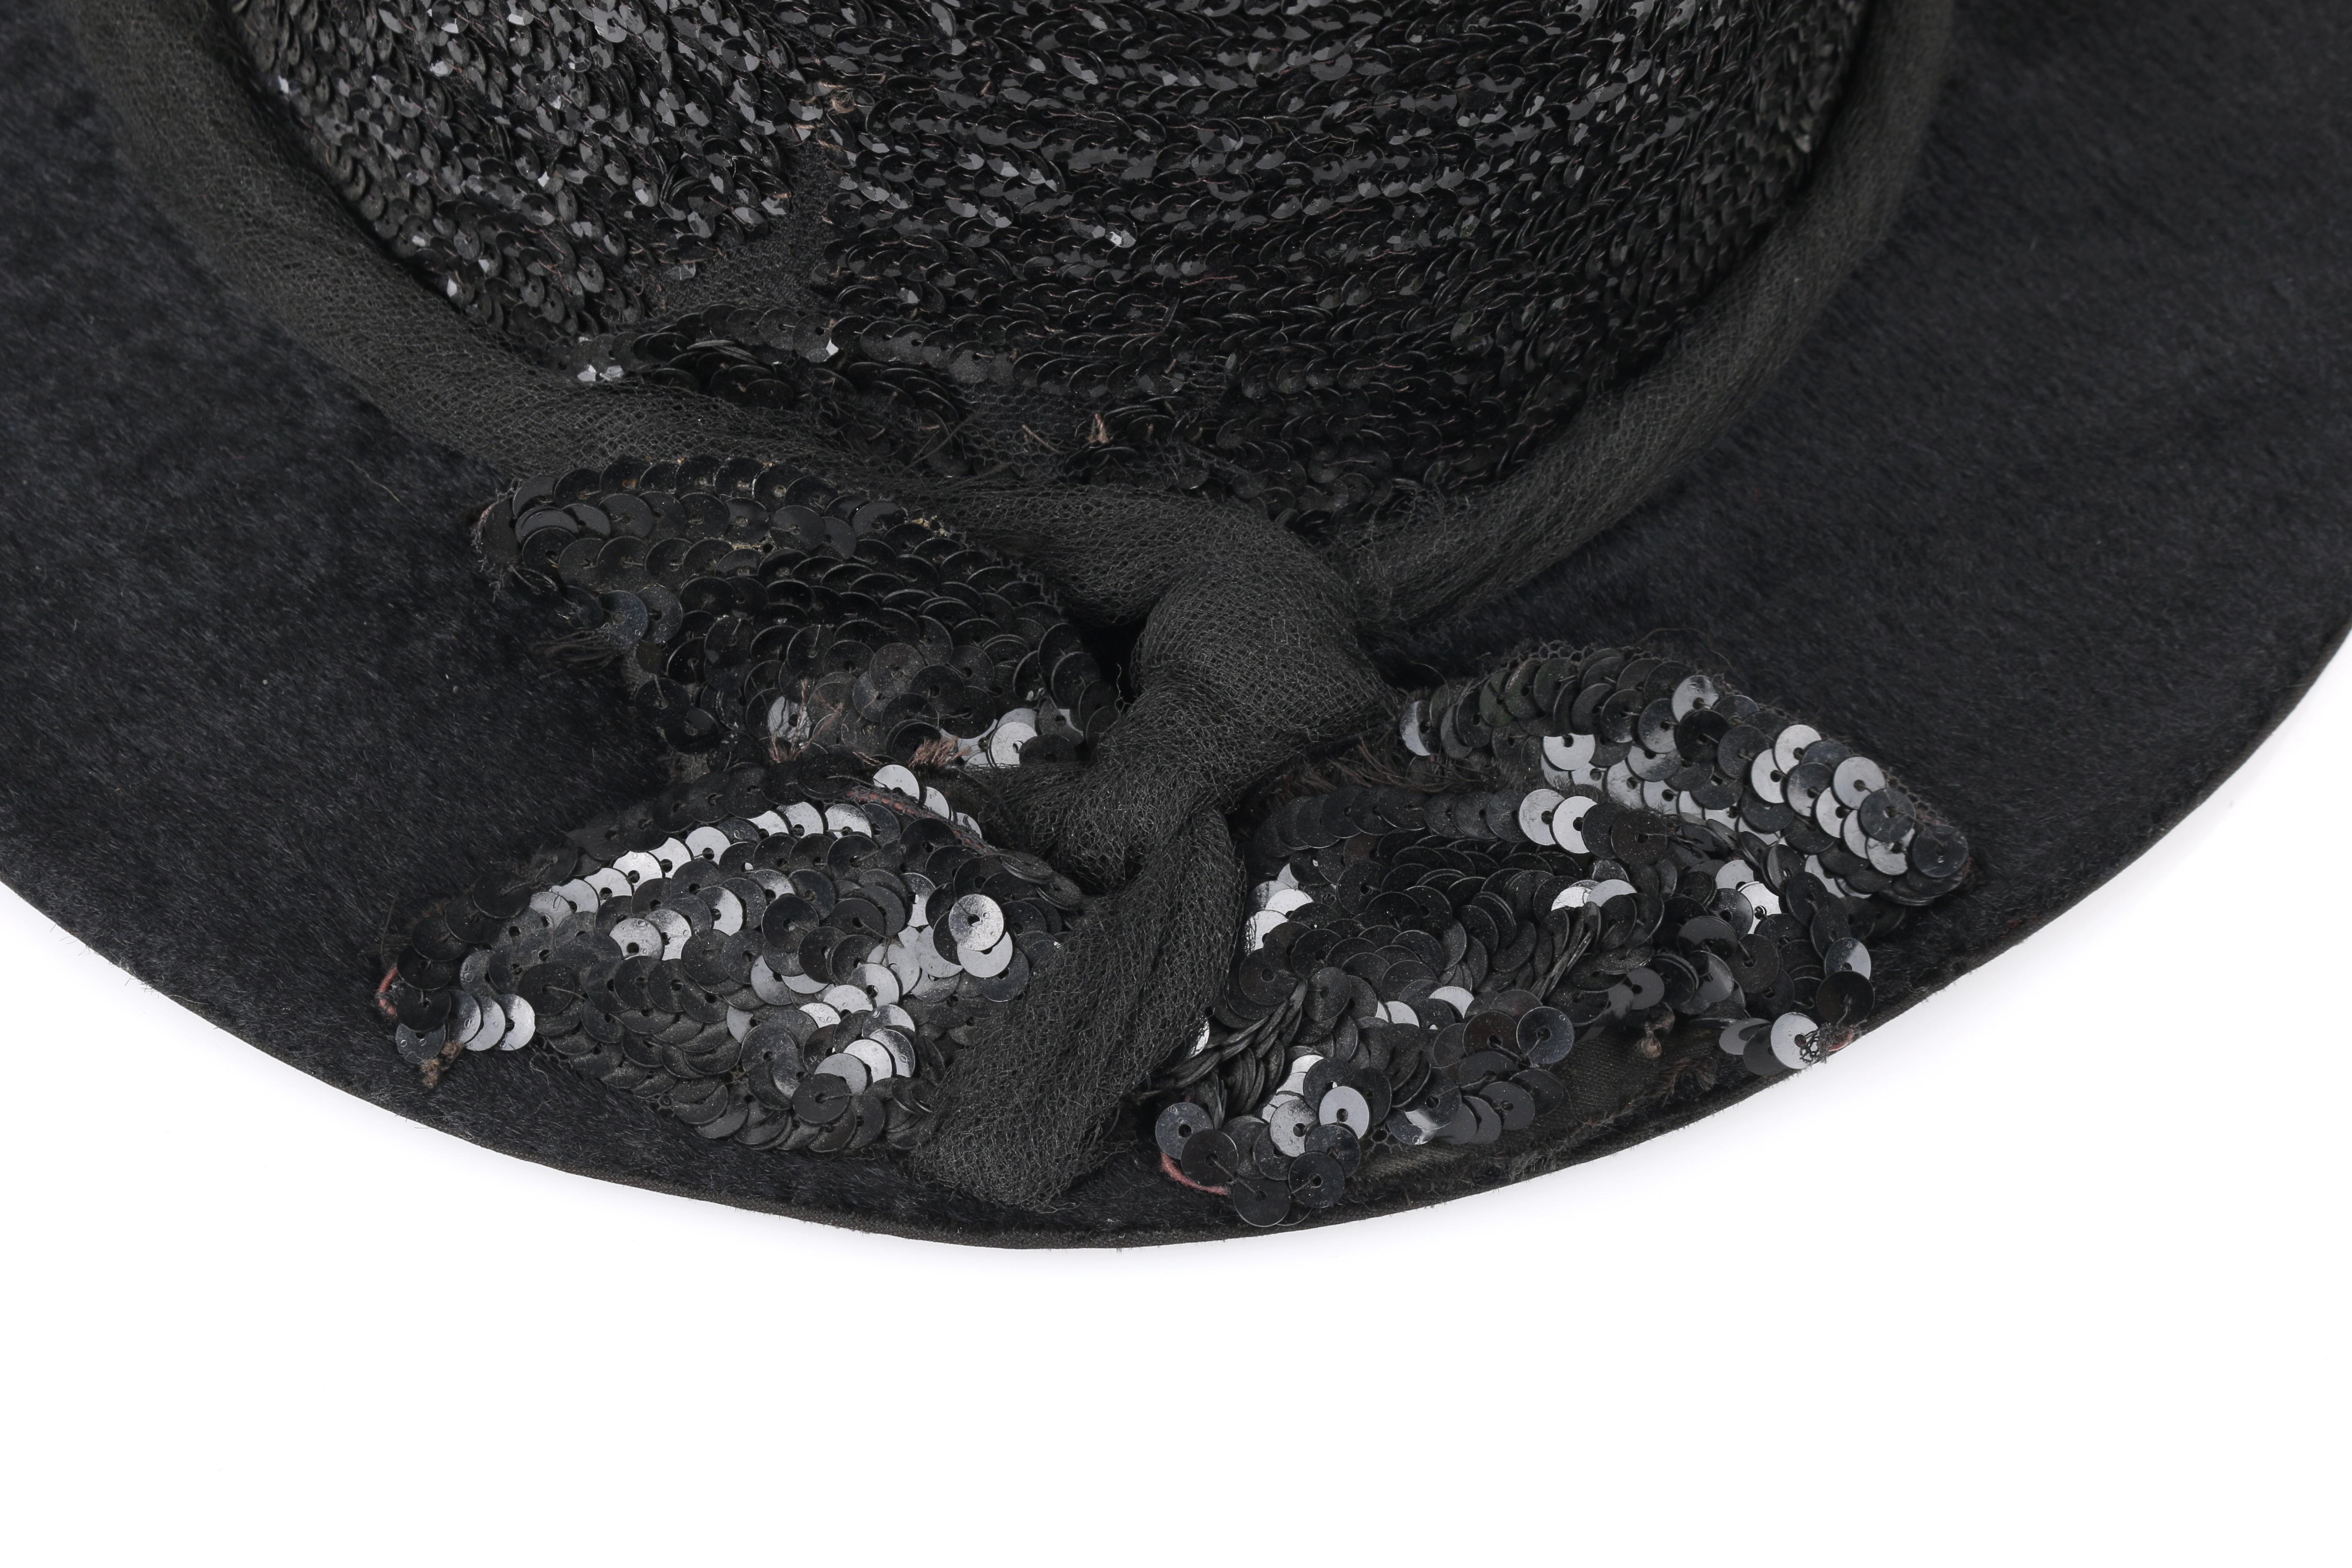 EDWARDIAN c.1900's Black Beaver Fur Felt Sequin Embellished Afternoon Hat 4